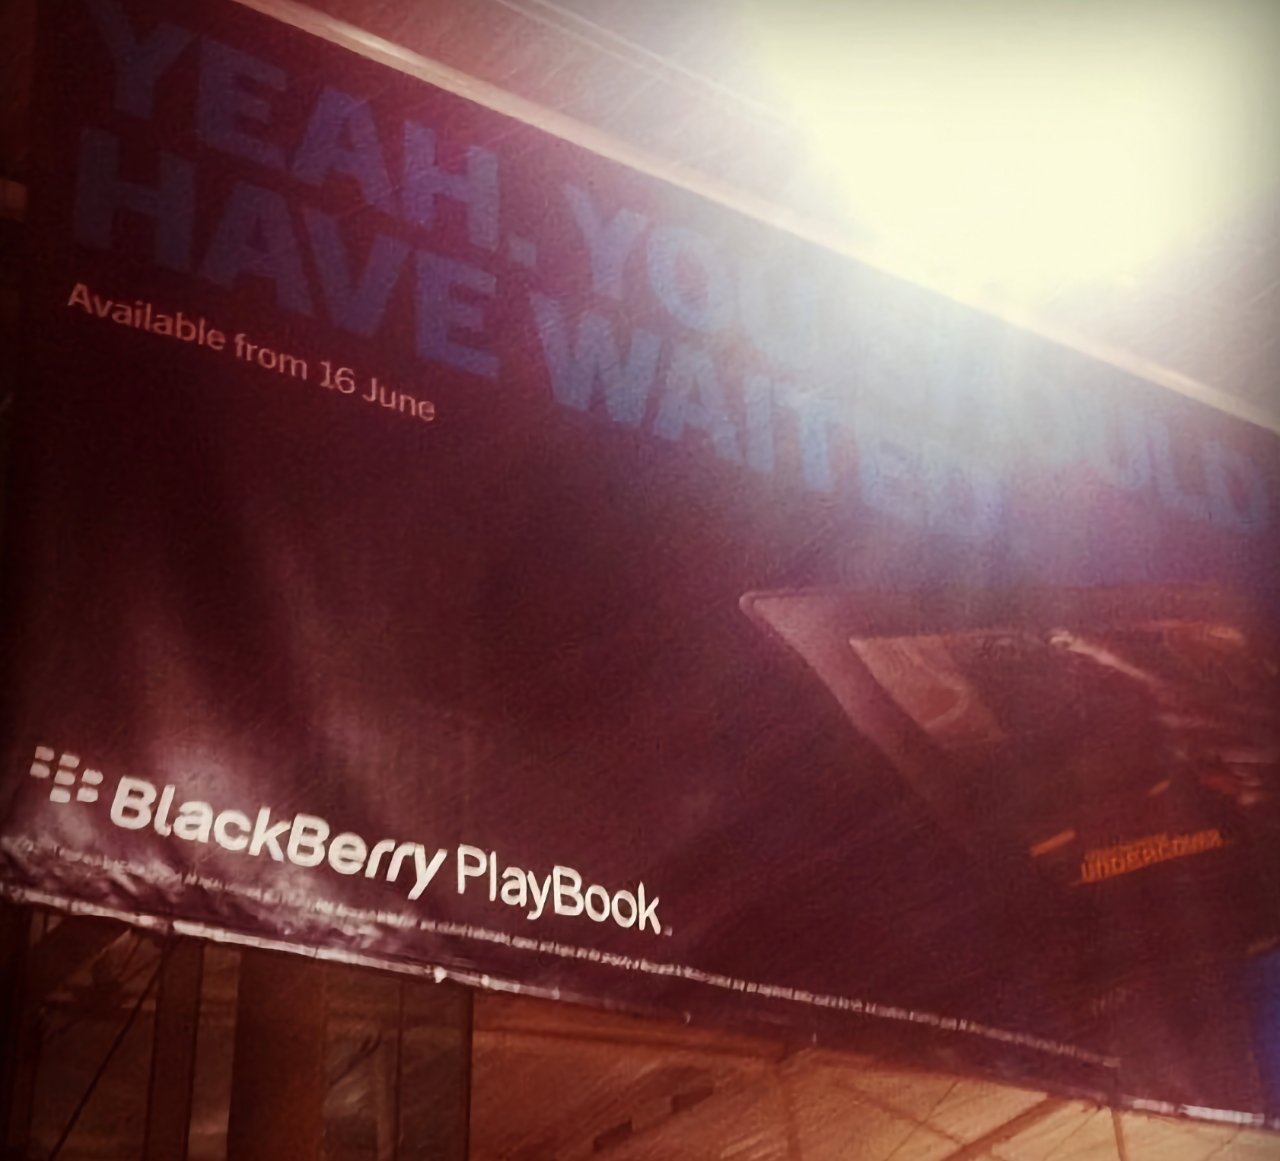 Ужасно опрометчивая реклама BlackBerry для провального Playbook.  (Источник: Обзор мобильной индустрии)